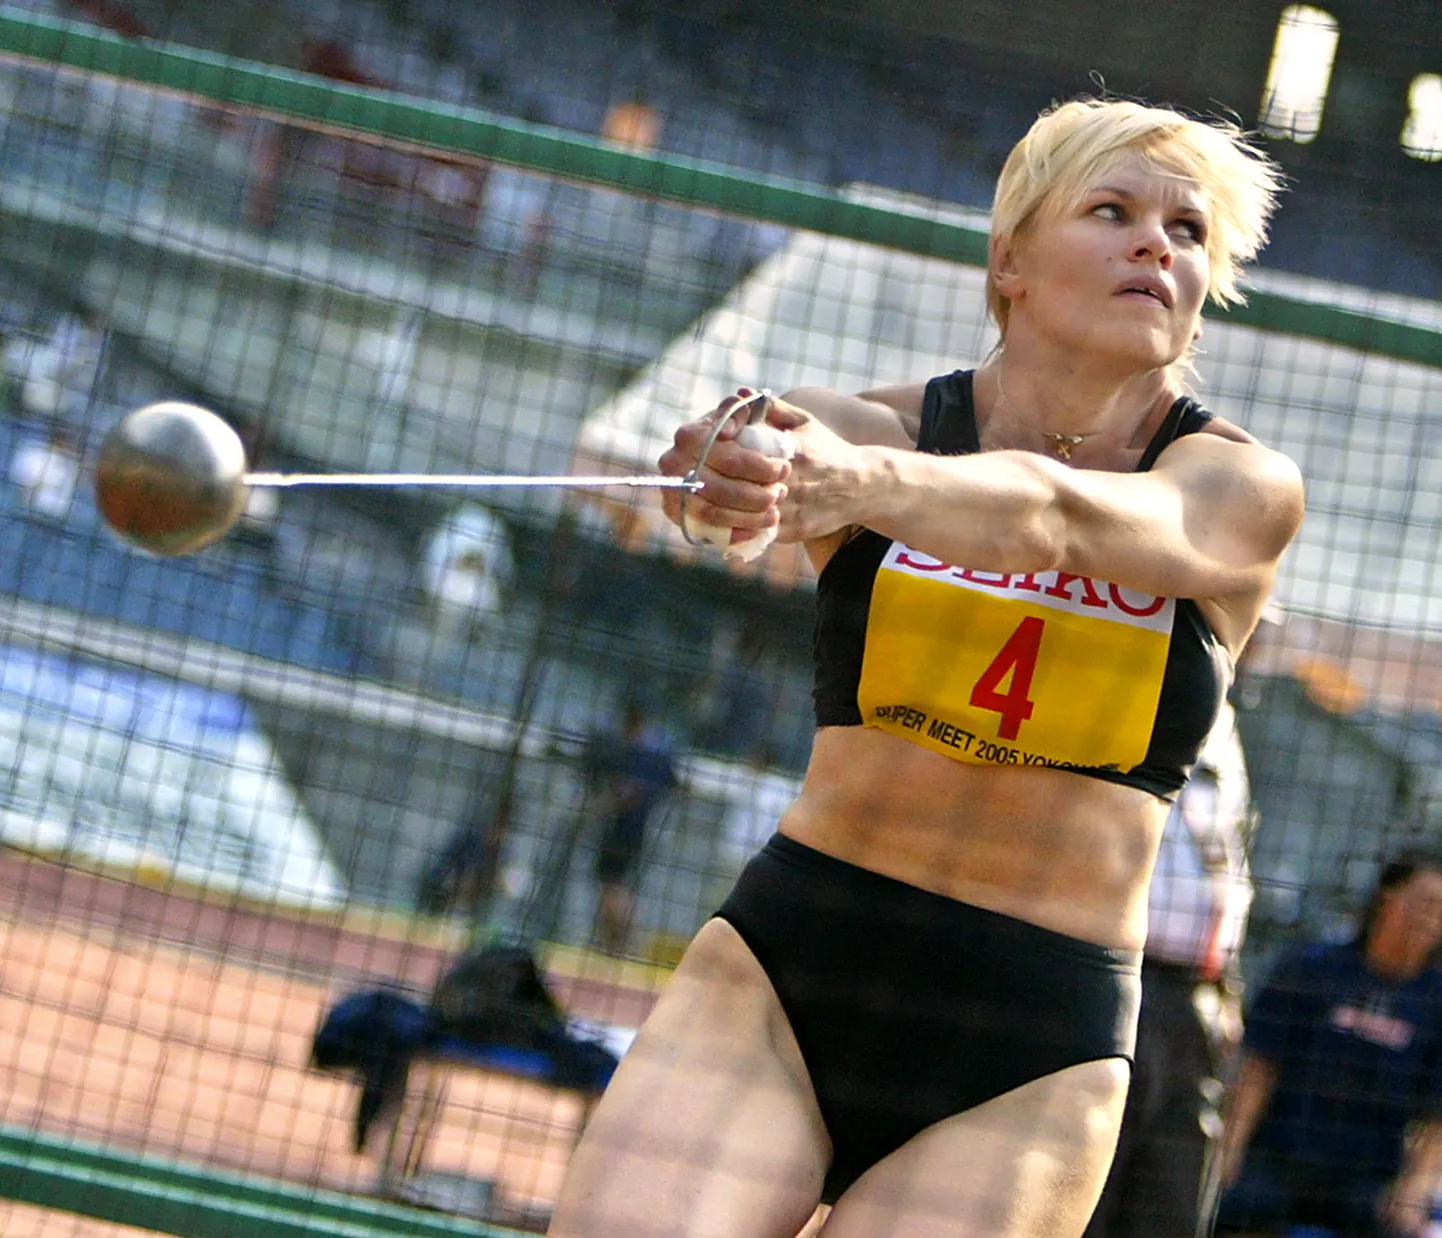 Helsingi MM-il vasaraheites kulla võitnud Olga Kuzenkova oli üks sportlastest, kes 2013. aastal tehtud järeltestimisel vahele jäi.